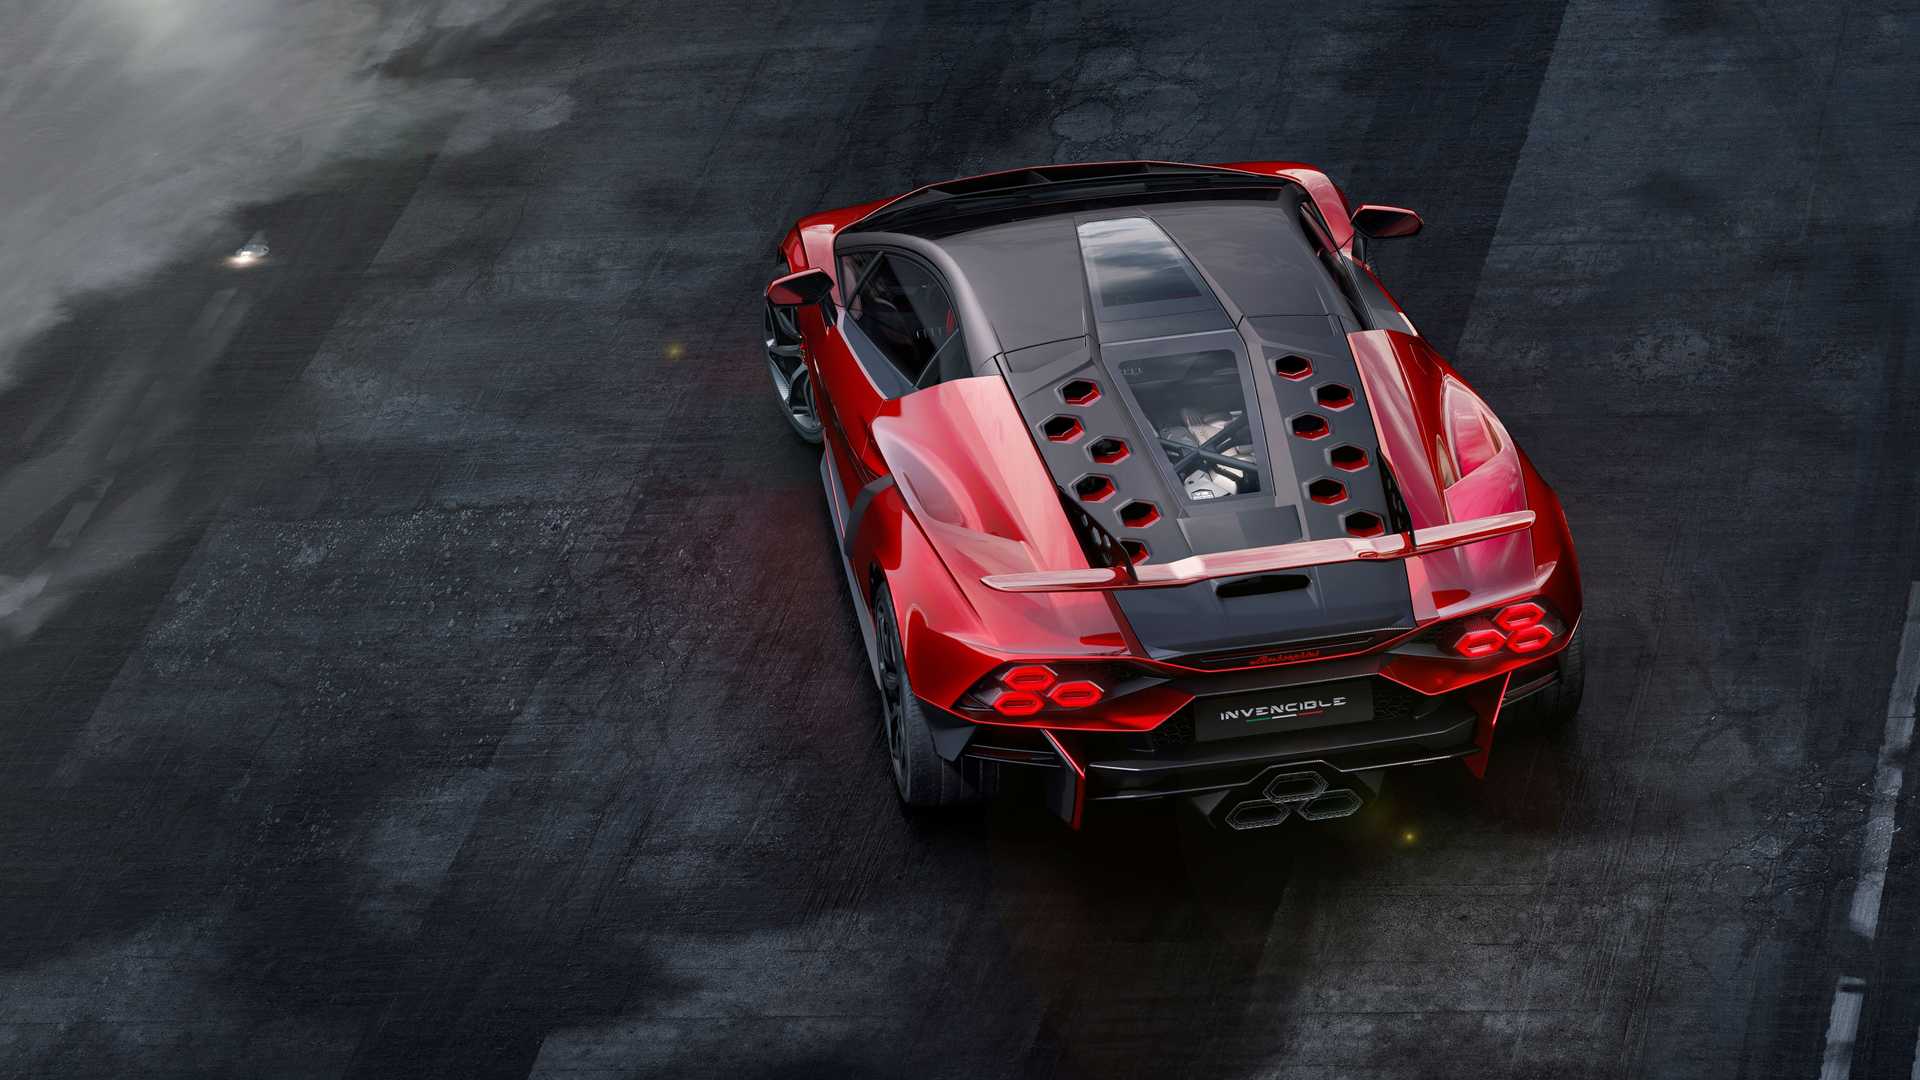 Lamborghini ra mắt bộ đôi siêu xe V12 chạy xăng cuối cùng, sau đây sẽ toàn siêu xe điện êm ru chưa biết nẹt pô kiểu gì - ảnh 8